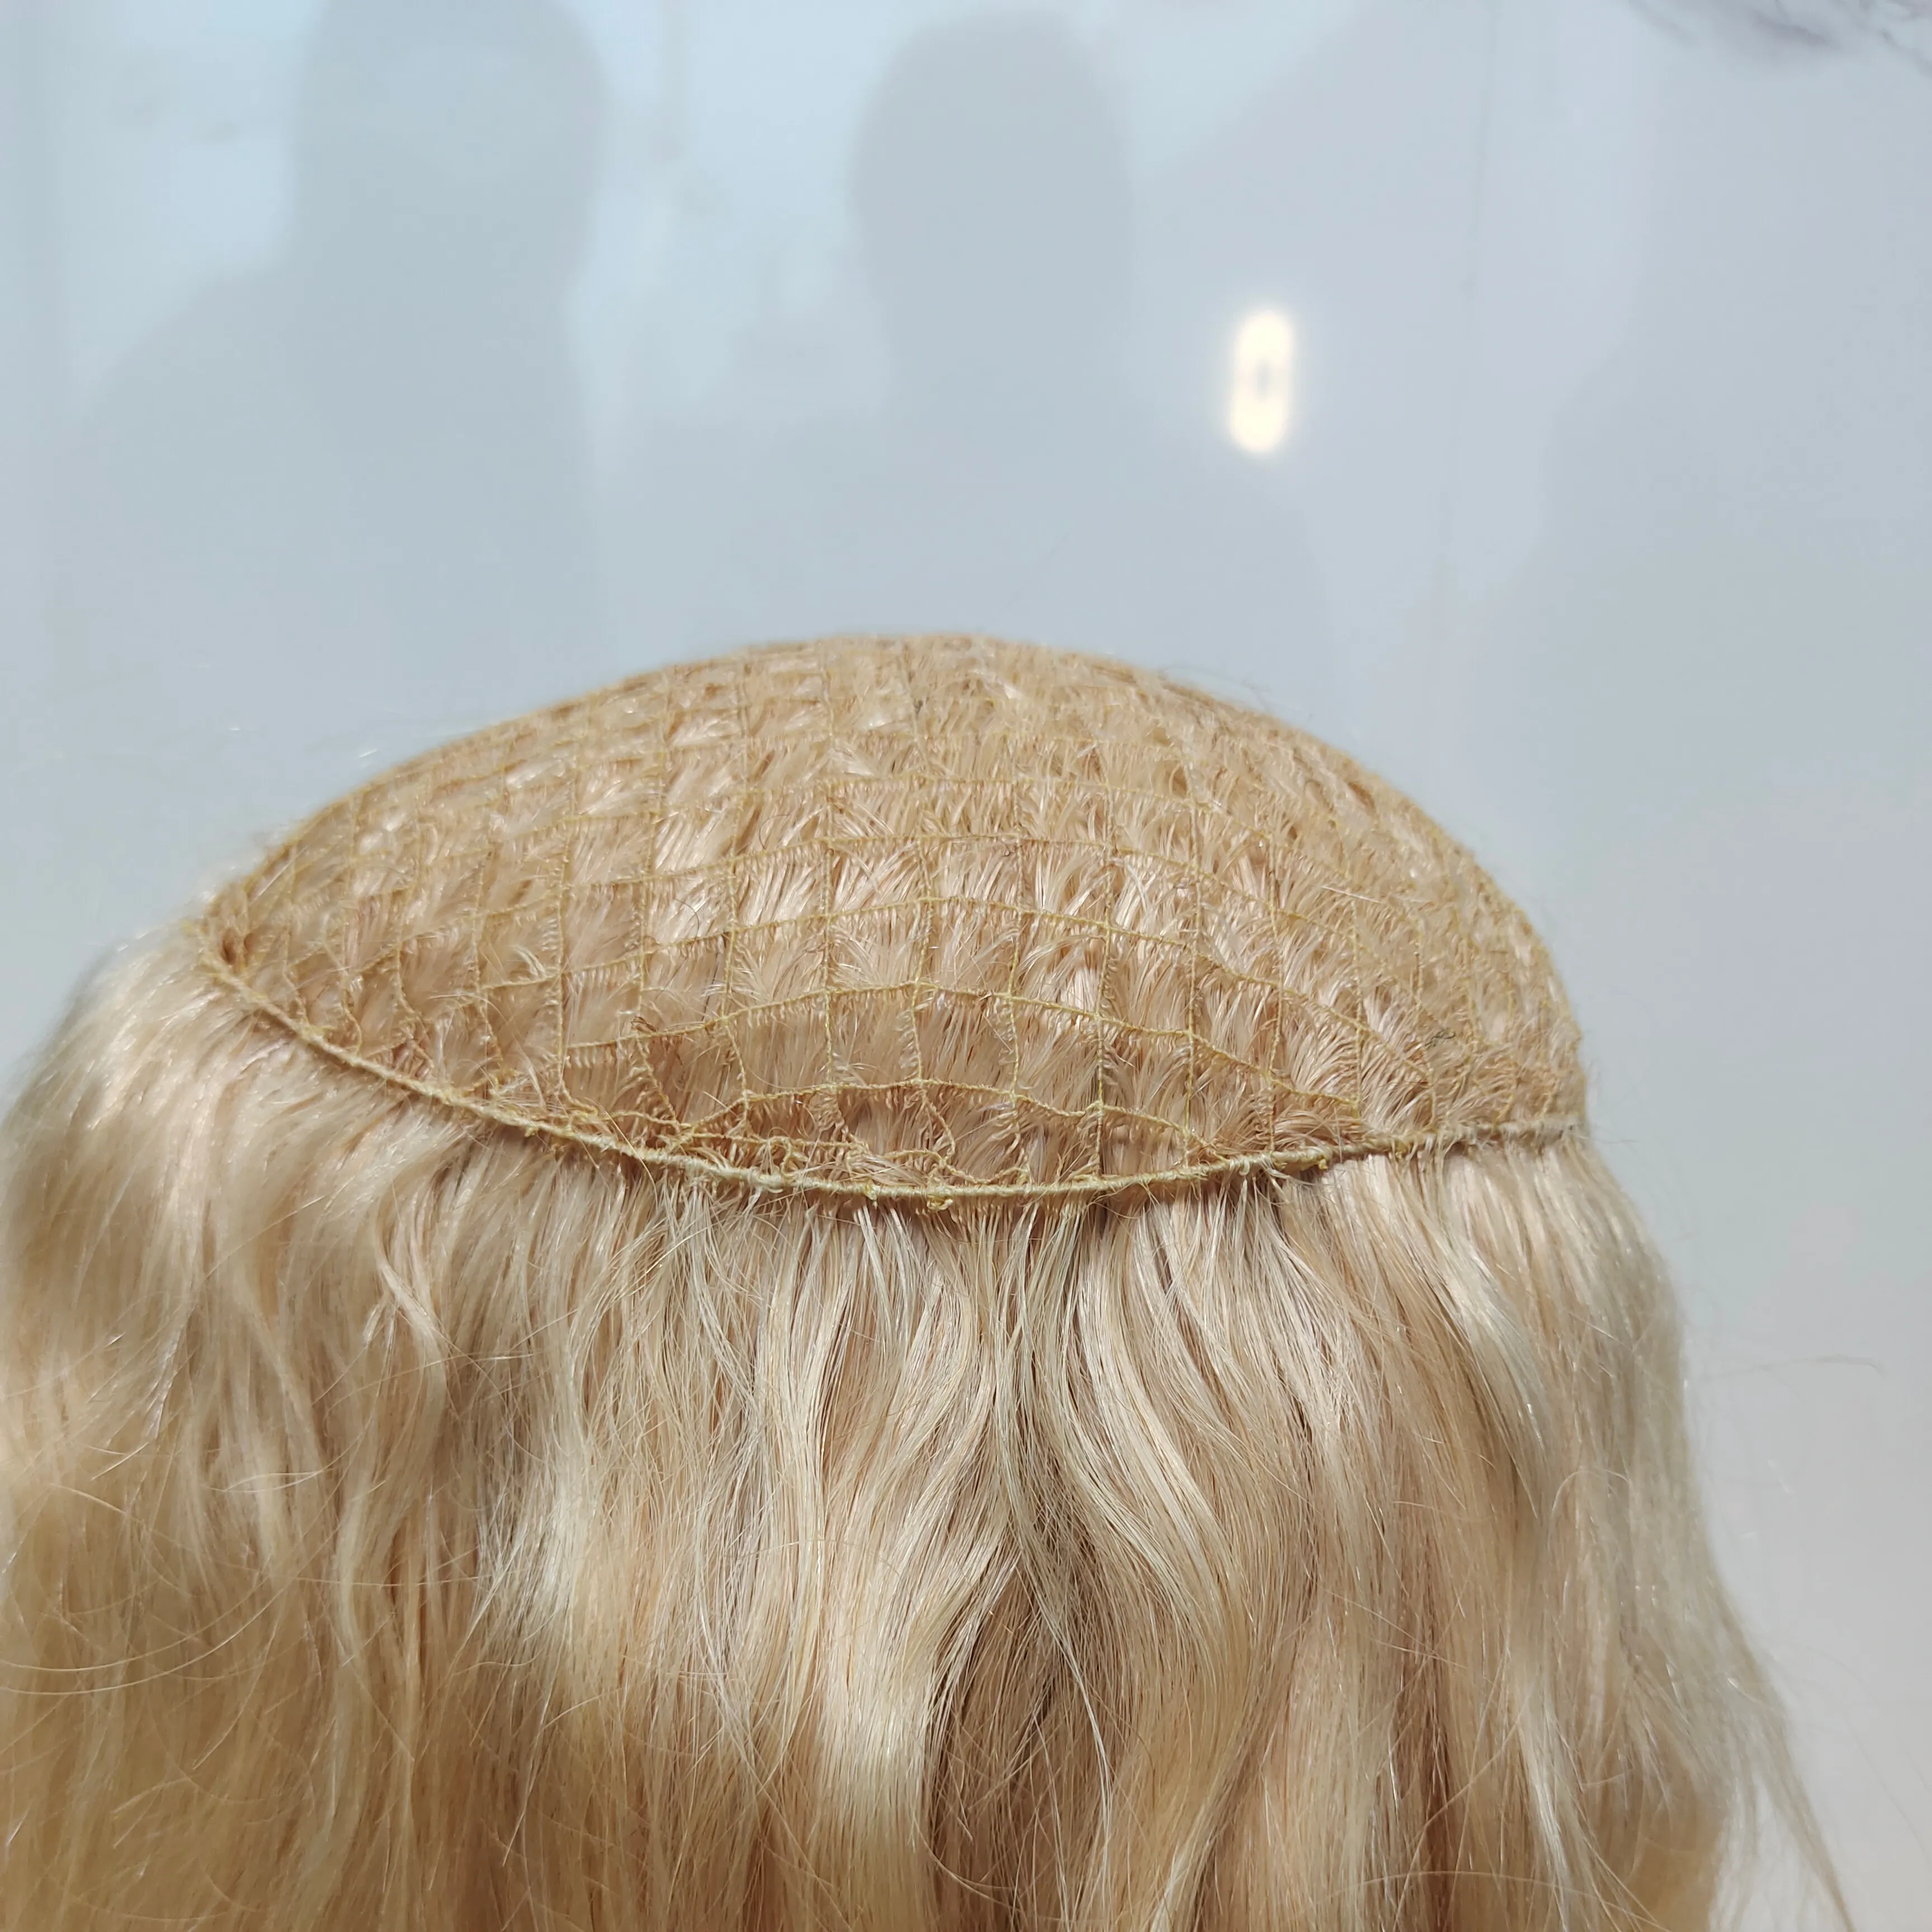 المتكاملة شعر مستعار ، من خلال سحب توبر شعر مستعار ، شعر الإنسان من خلال سحب القبعات العالية